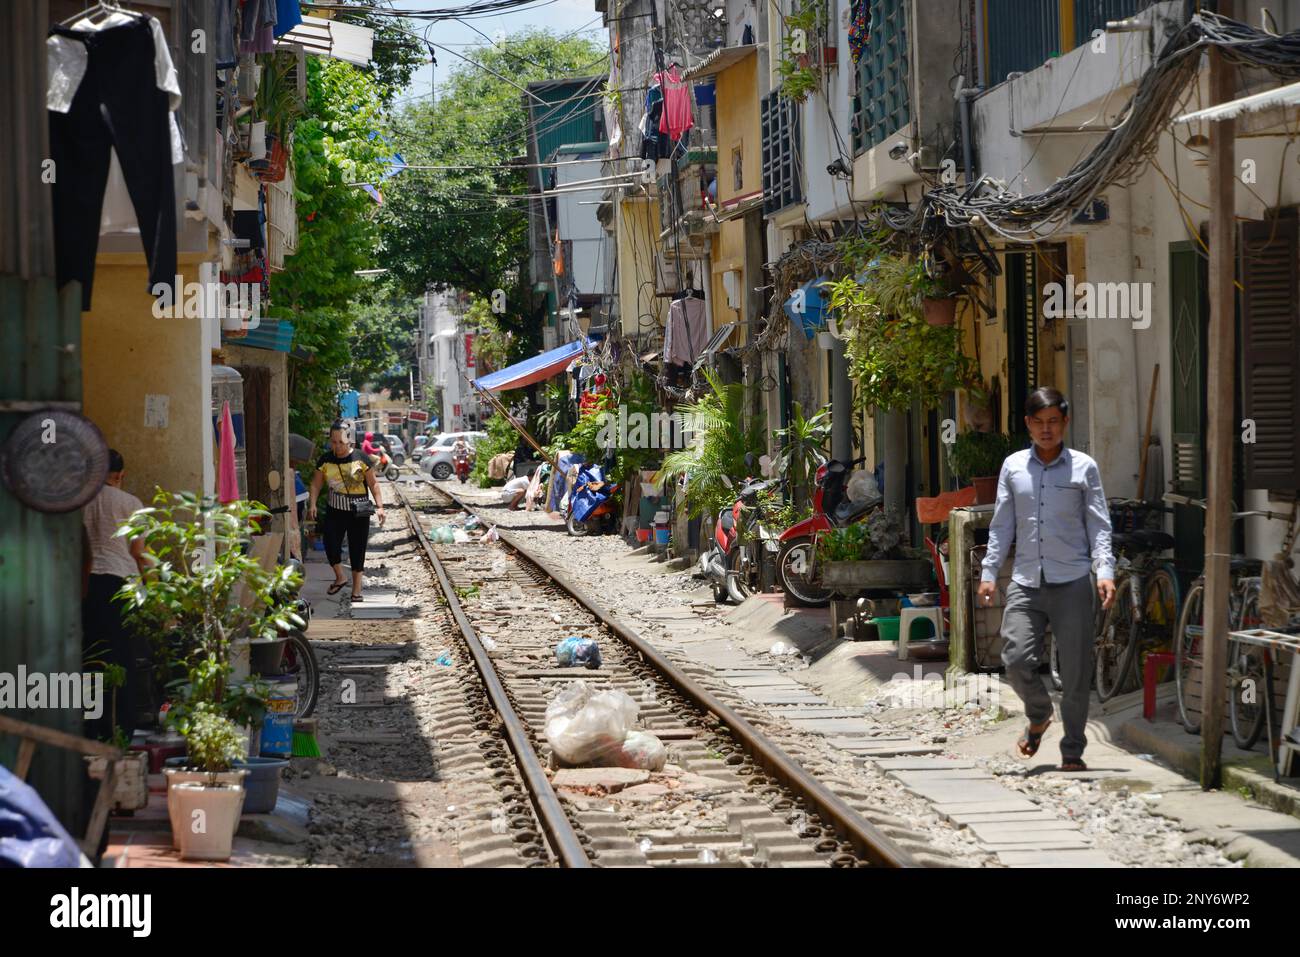 Railway line, Old Quarter, Hanoi, Vietnam Stock Photo